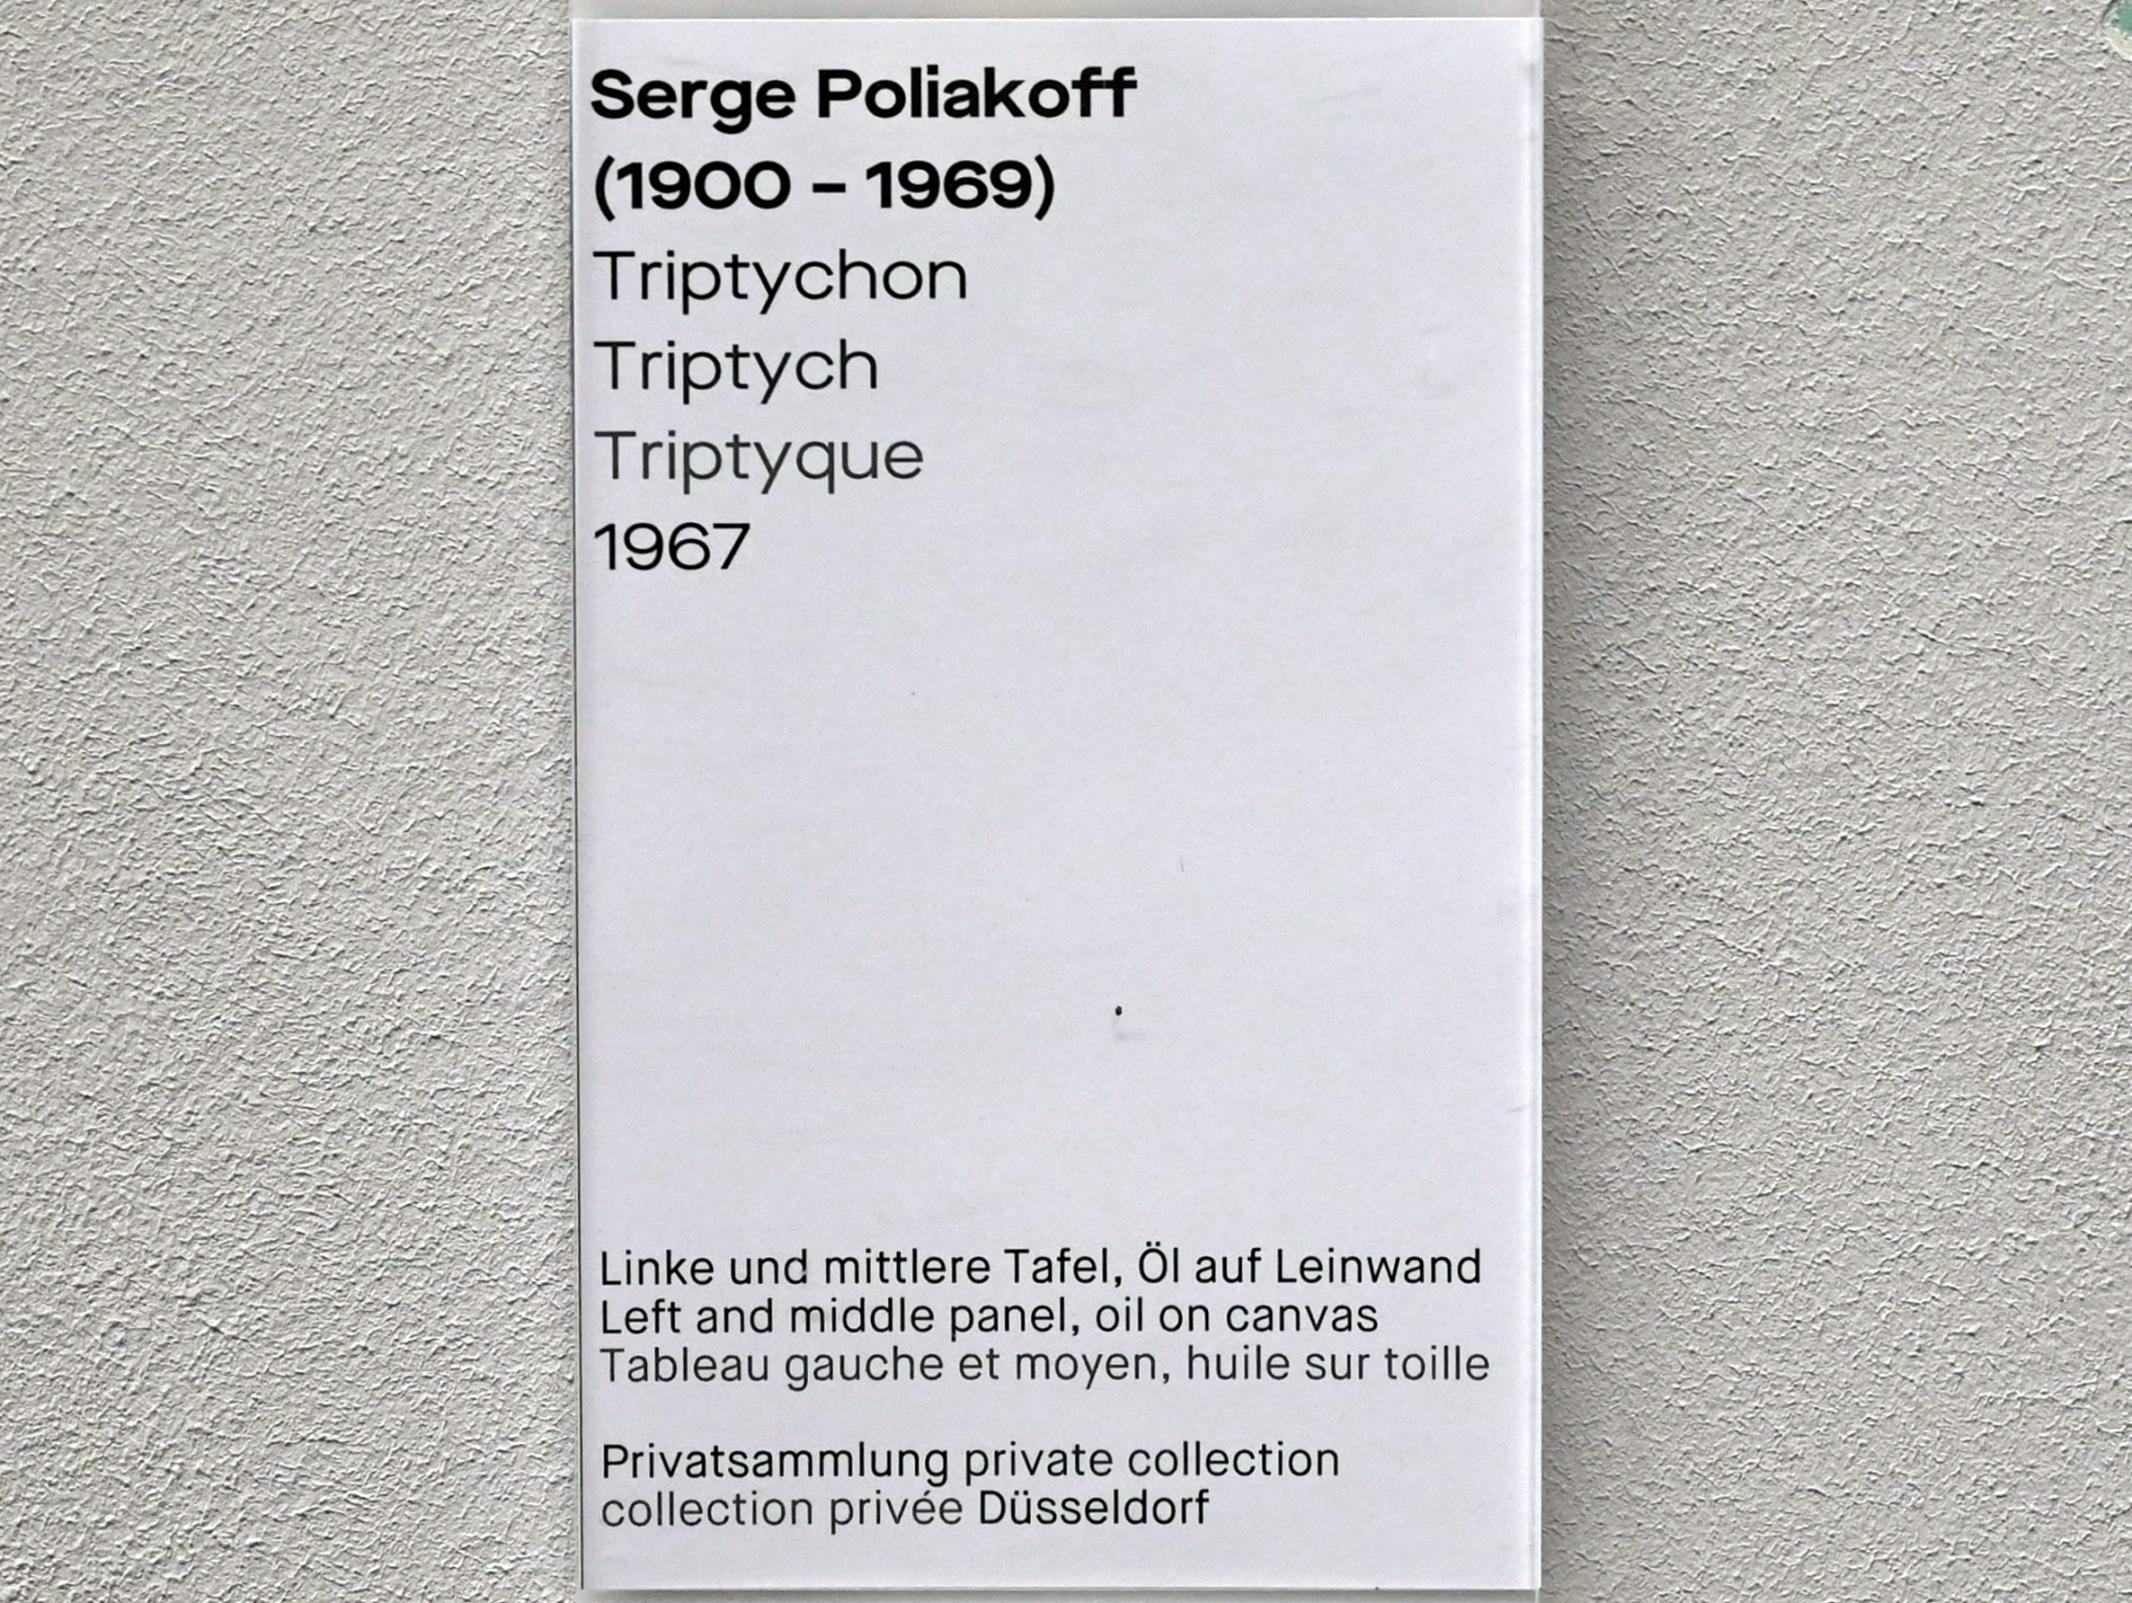 Serge Poliakoff (1936–1968), Triptychon, Chemnitz, Museum Gunzenhauser, Saal 2.1 - Serge Poliakoff, 1967, Bild 4/4